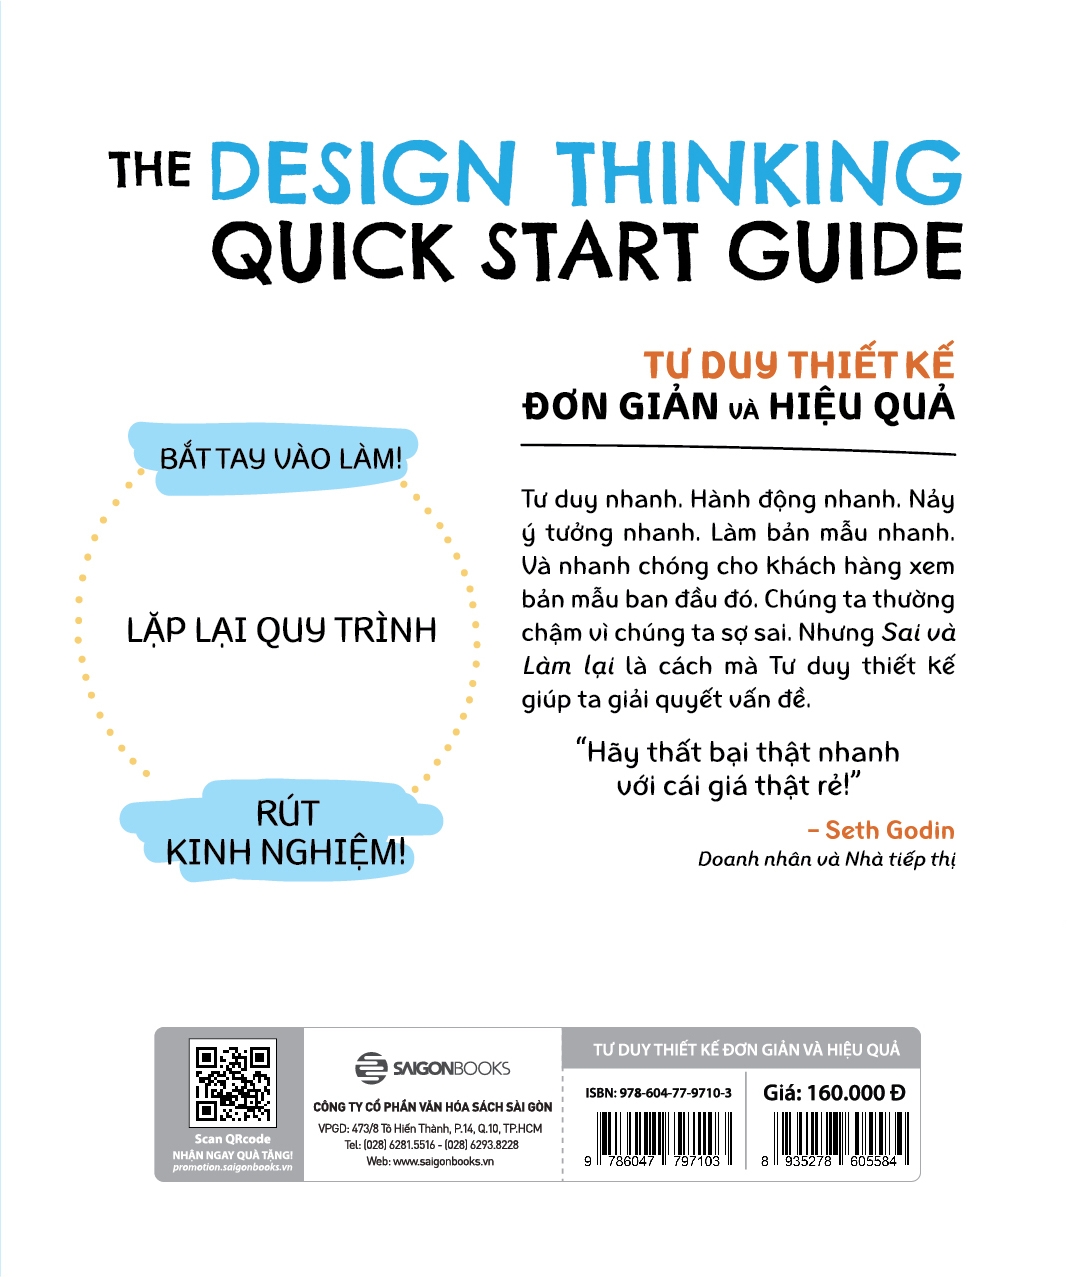 Tư Duy Thiết Kế Đơn Giản Và Hiệu Quả - The Design Thinking Quick Start Guide PDF